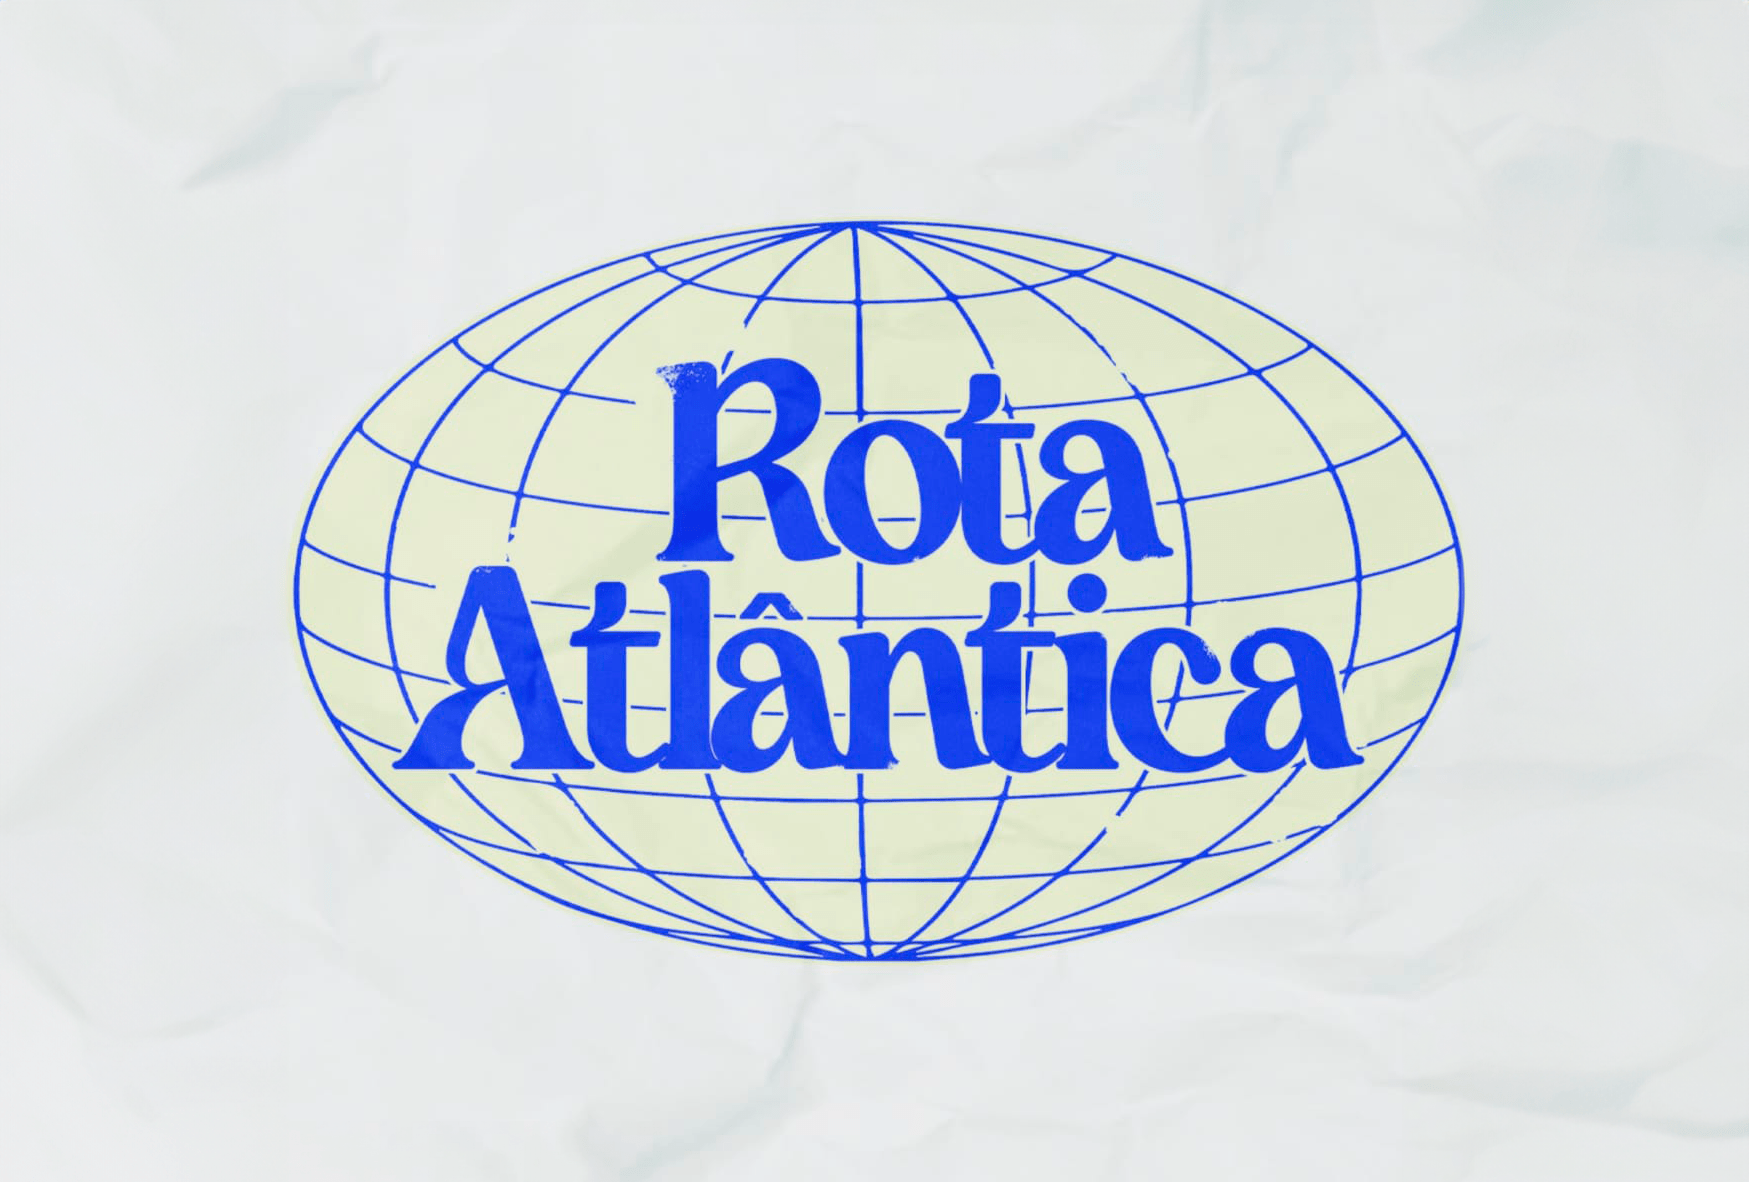 Rota Atlântica – Nigeria and Gana